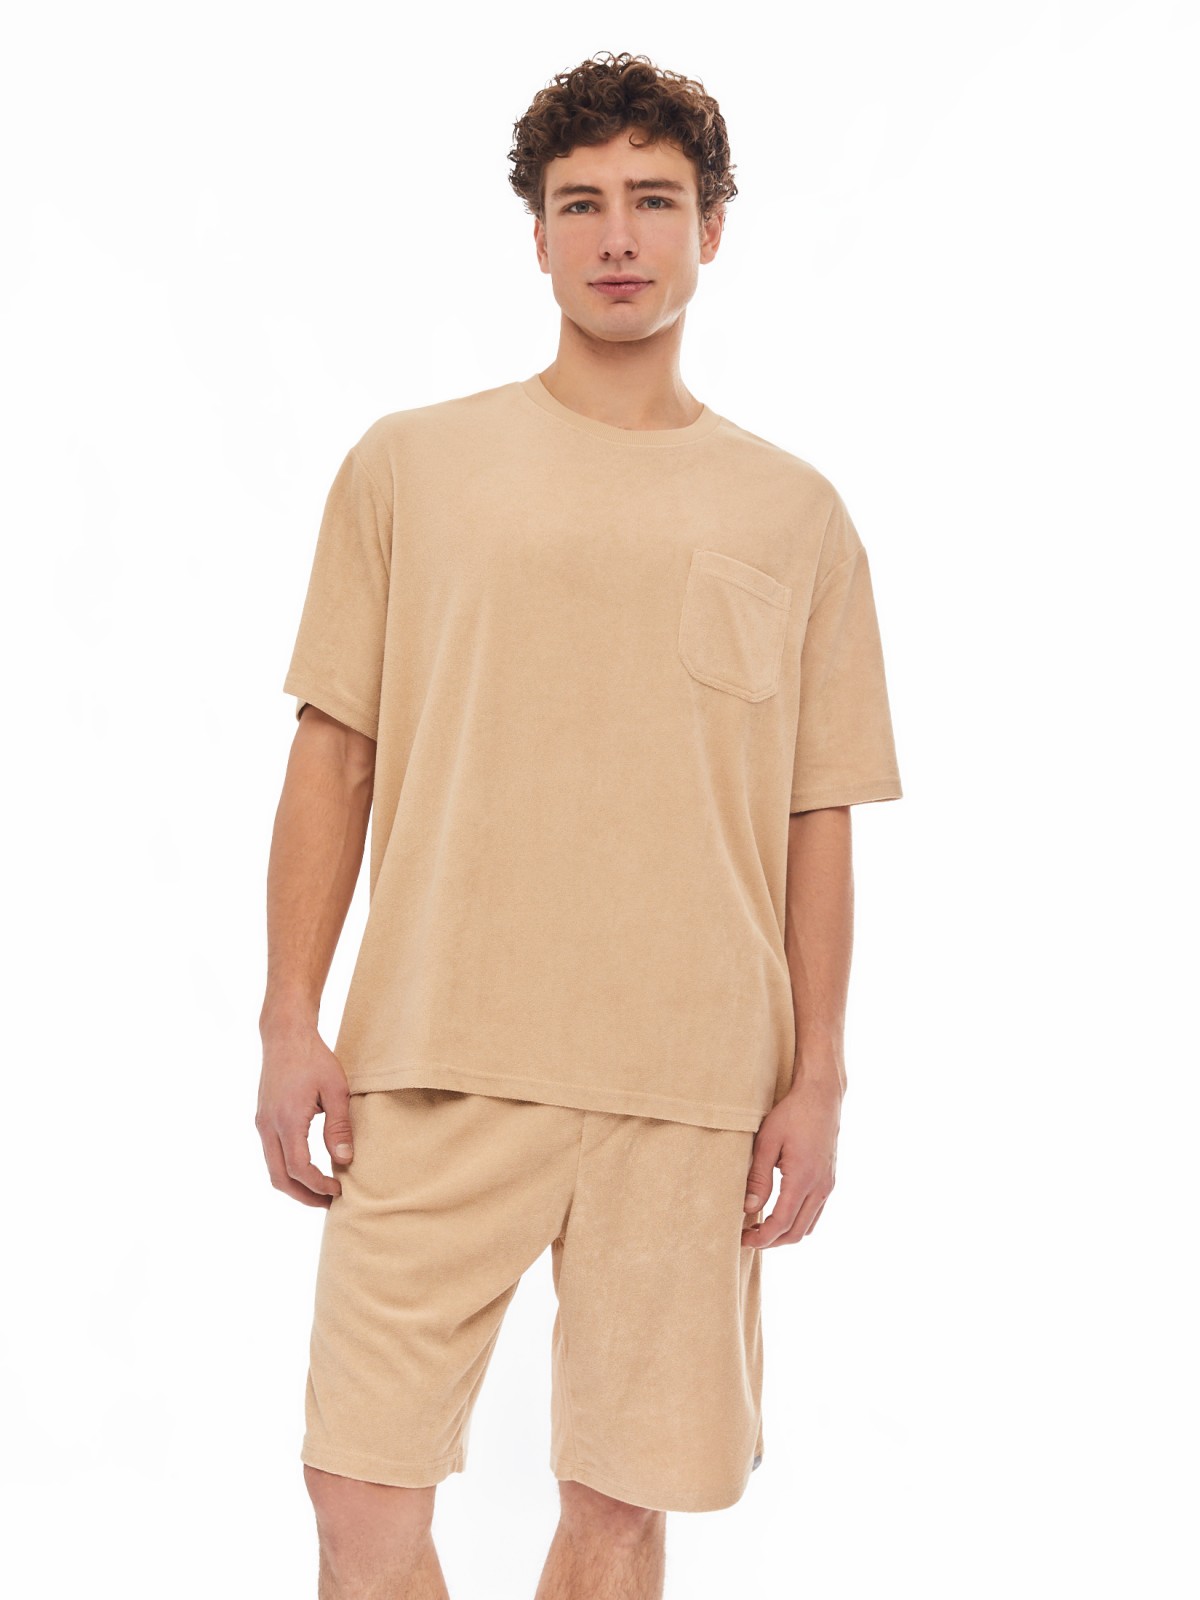 Домашний махровый комплект (футболка, шорты) zolla 614138759031, цвет бежевый, размер S